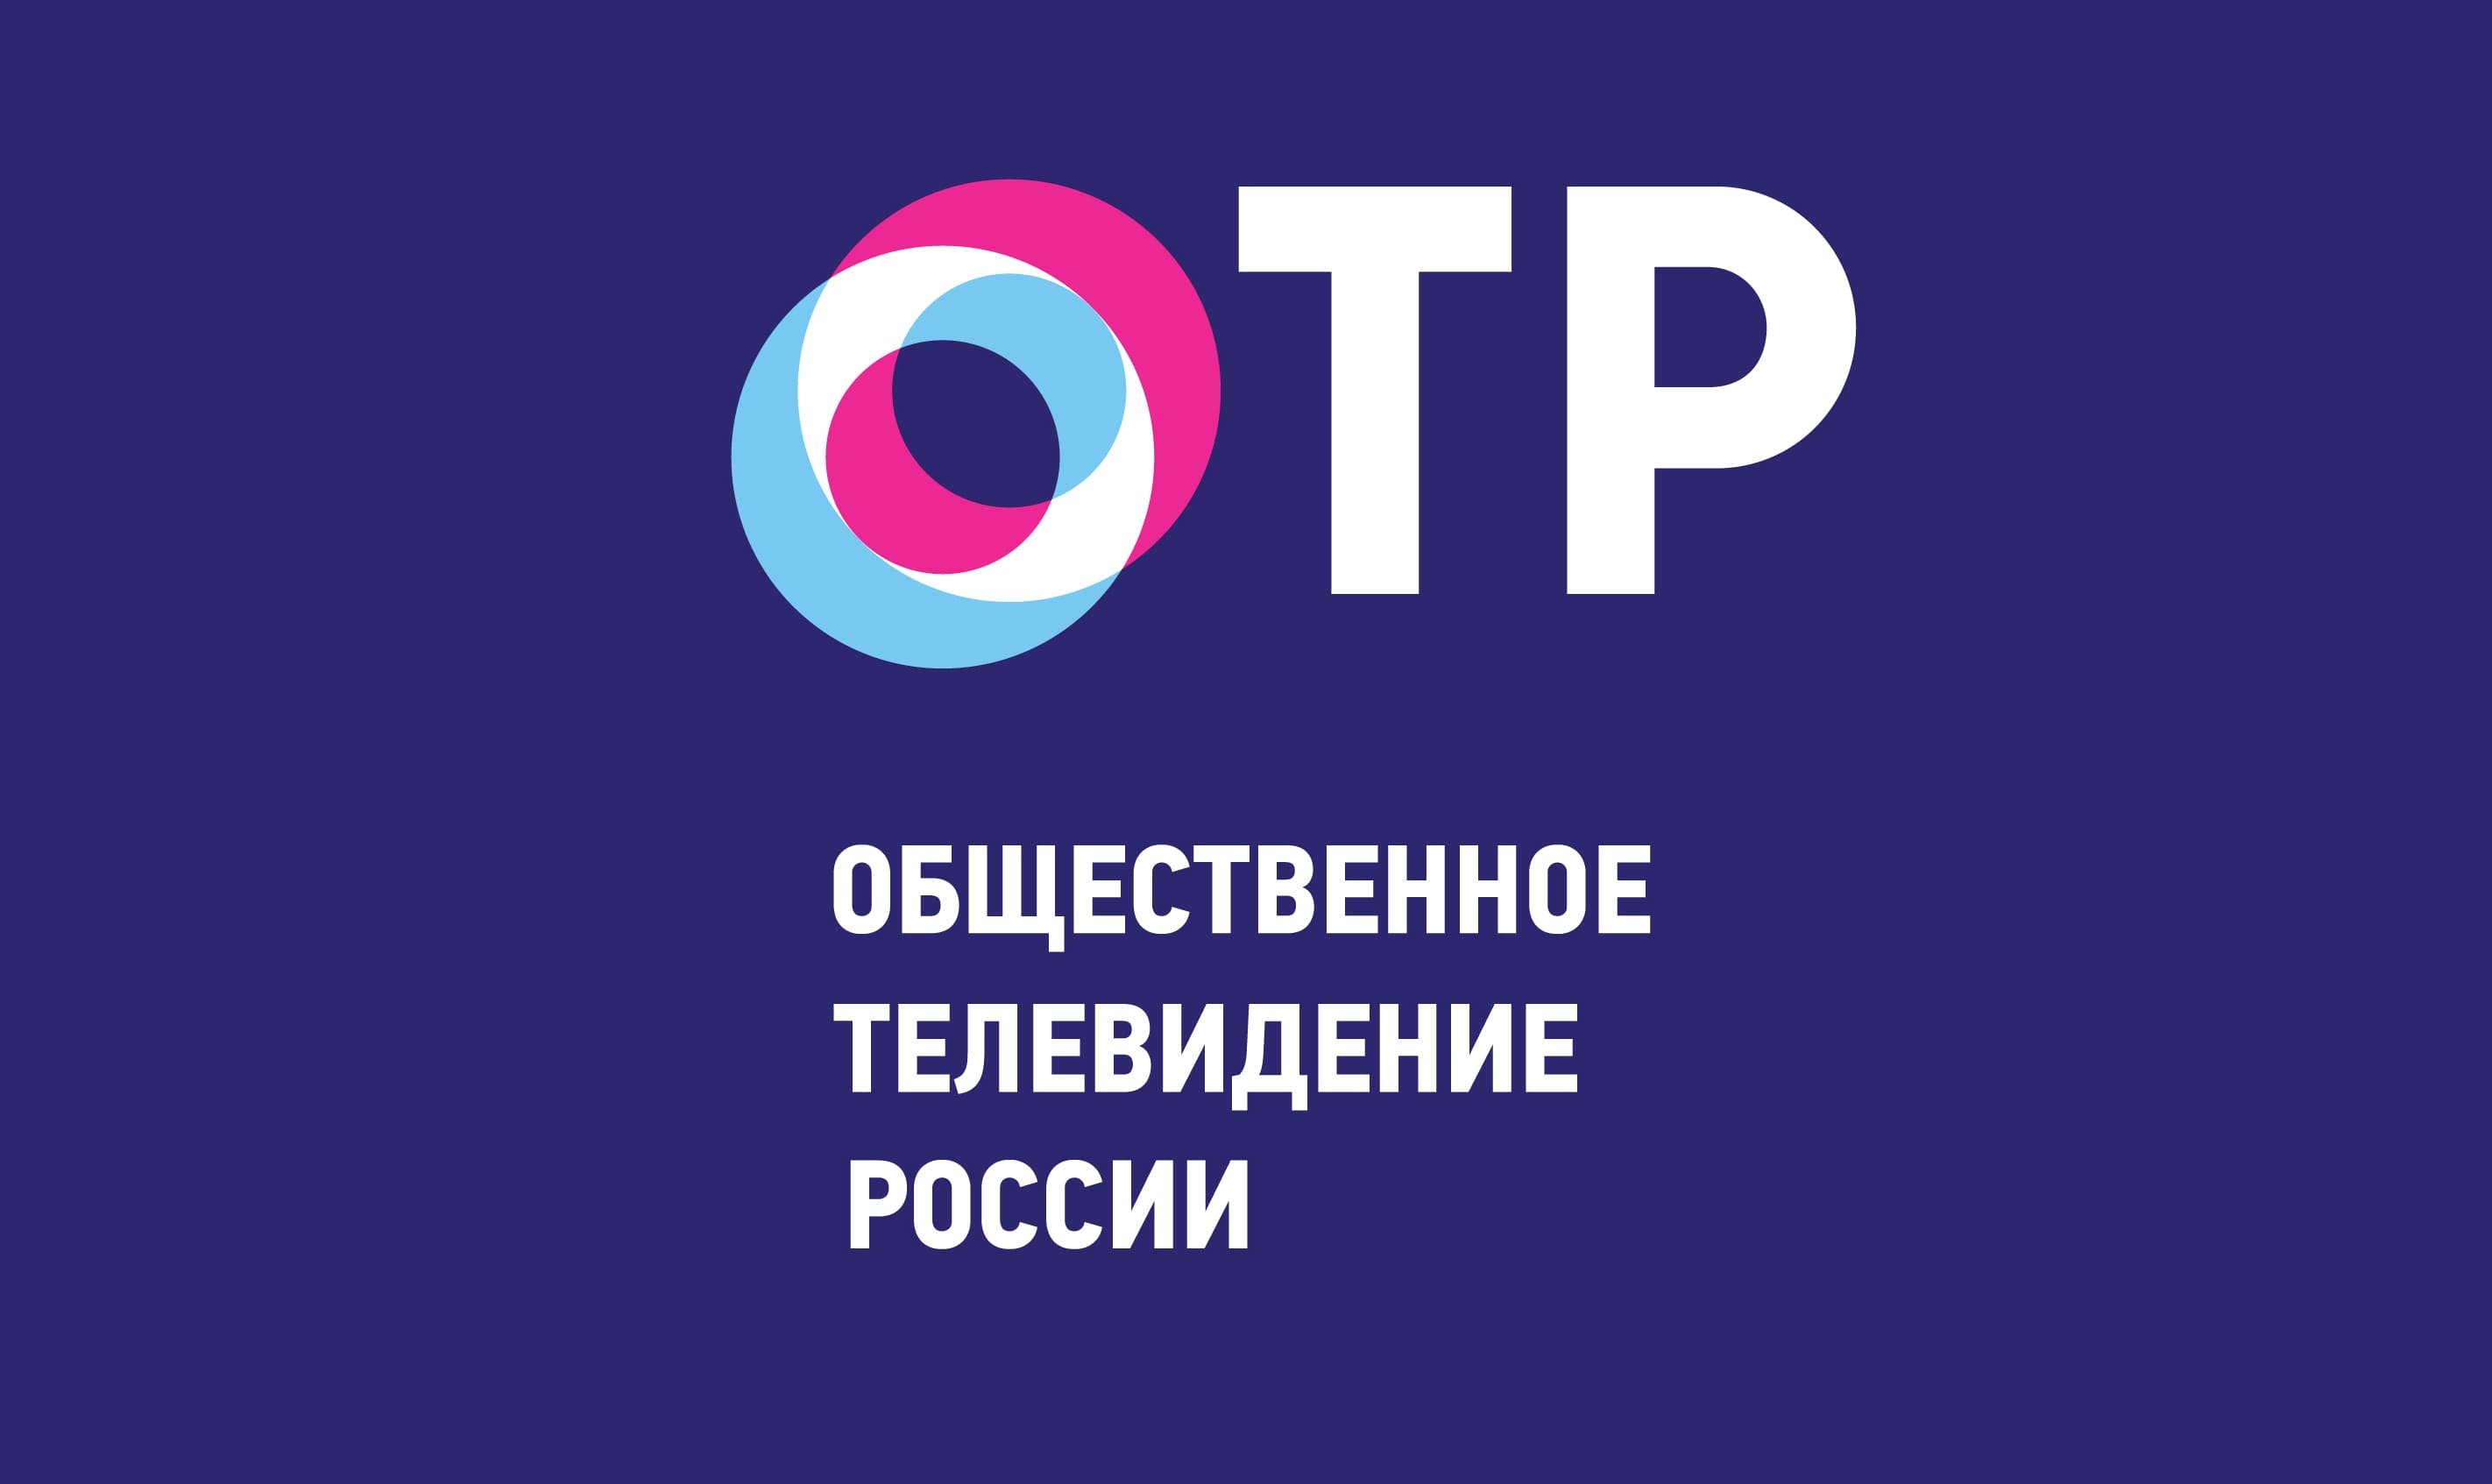 OTR logo 2